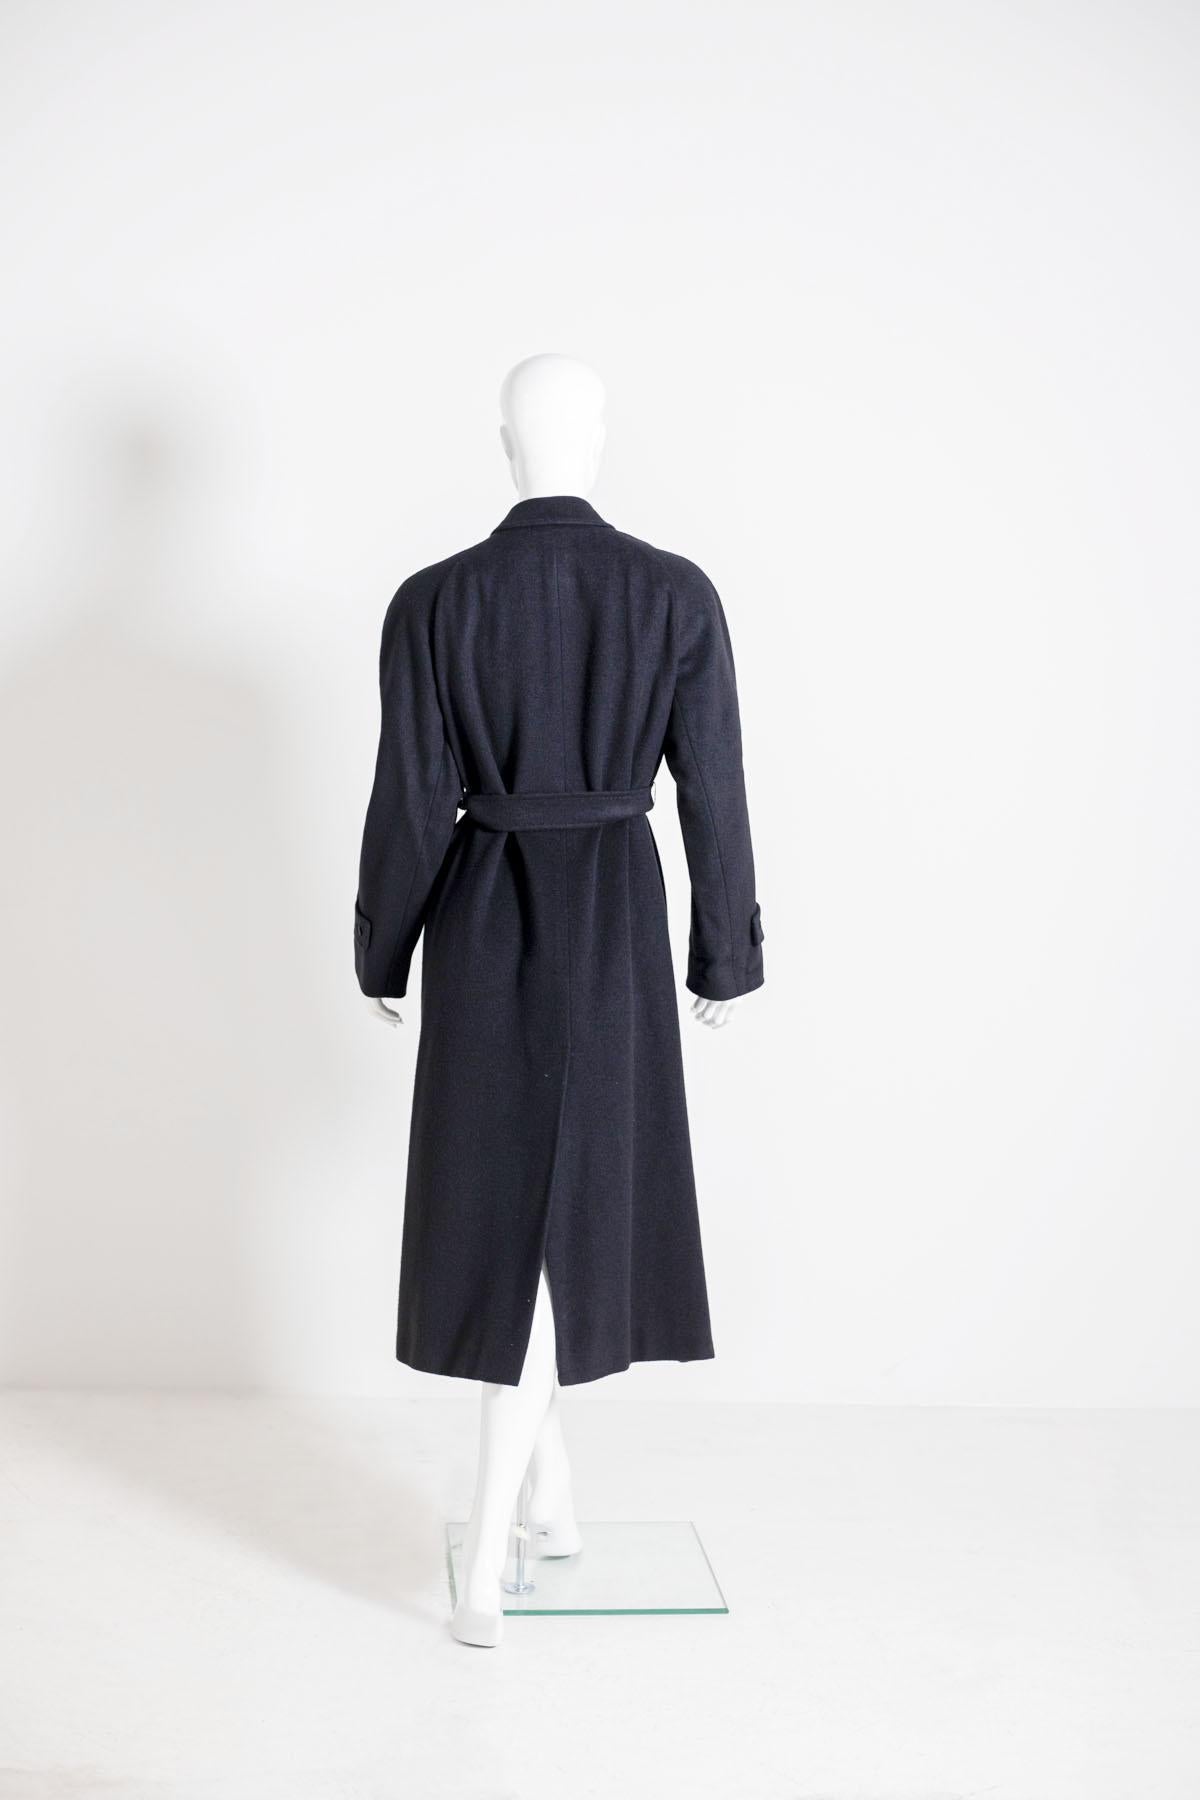 Manteau Aquascutum couleur noire pour femme, années 1990 en vente 1